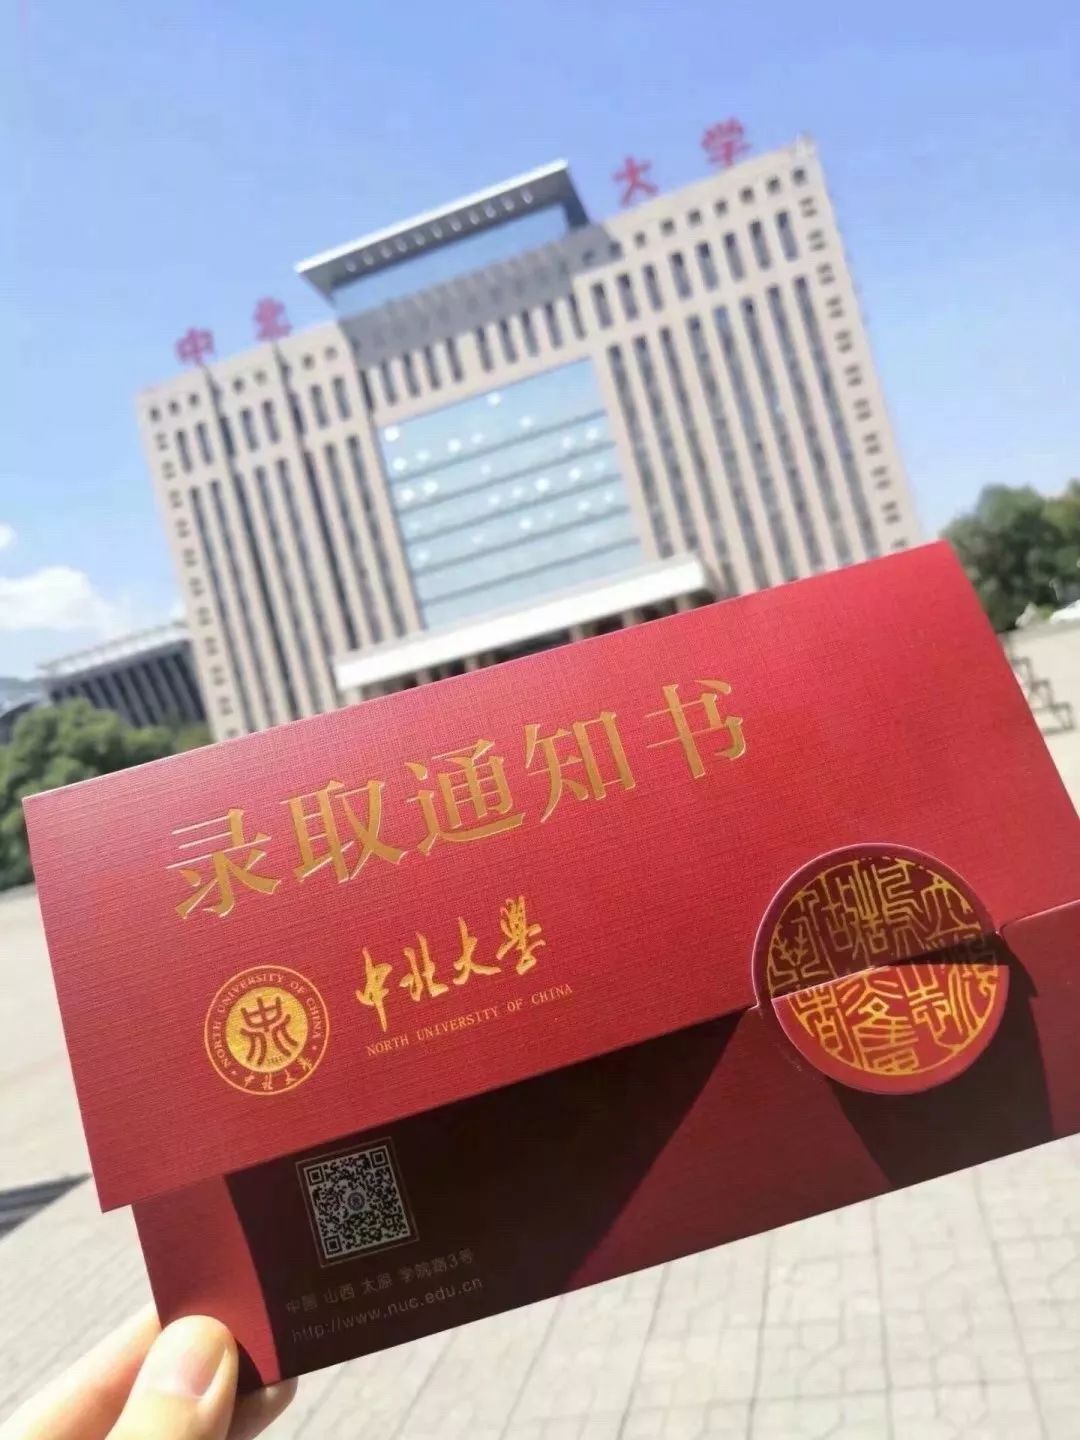 中北大学通知书以信封形式设计,红色的封面象征着军工底蕴